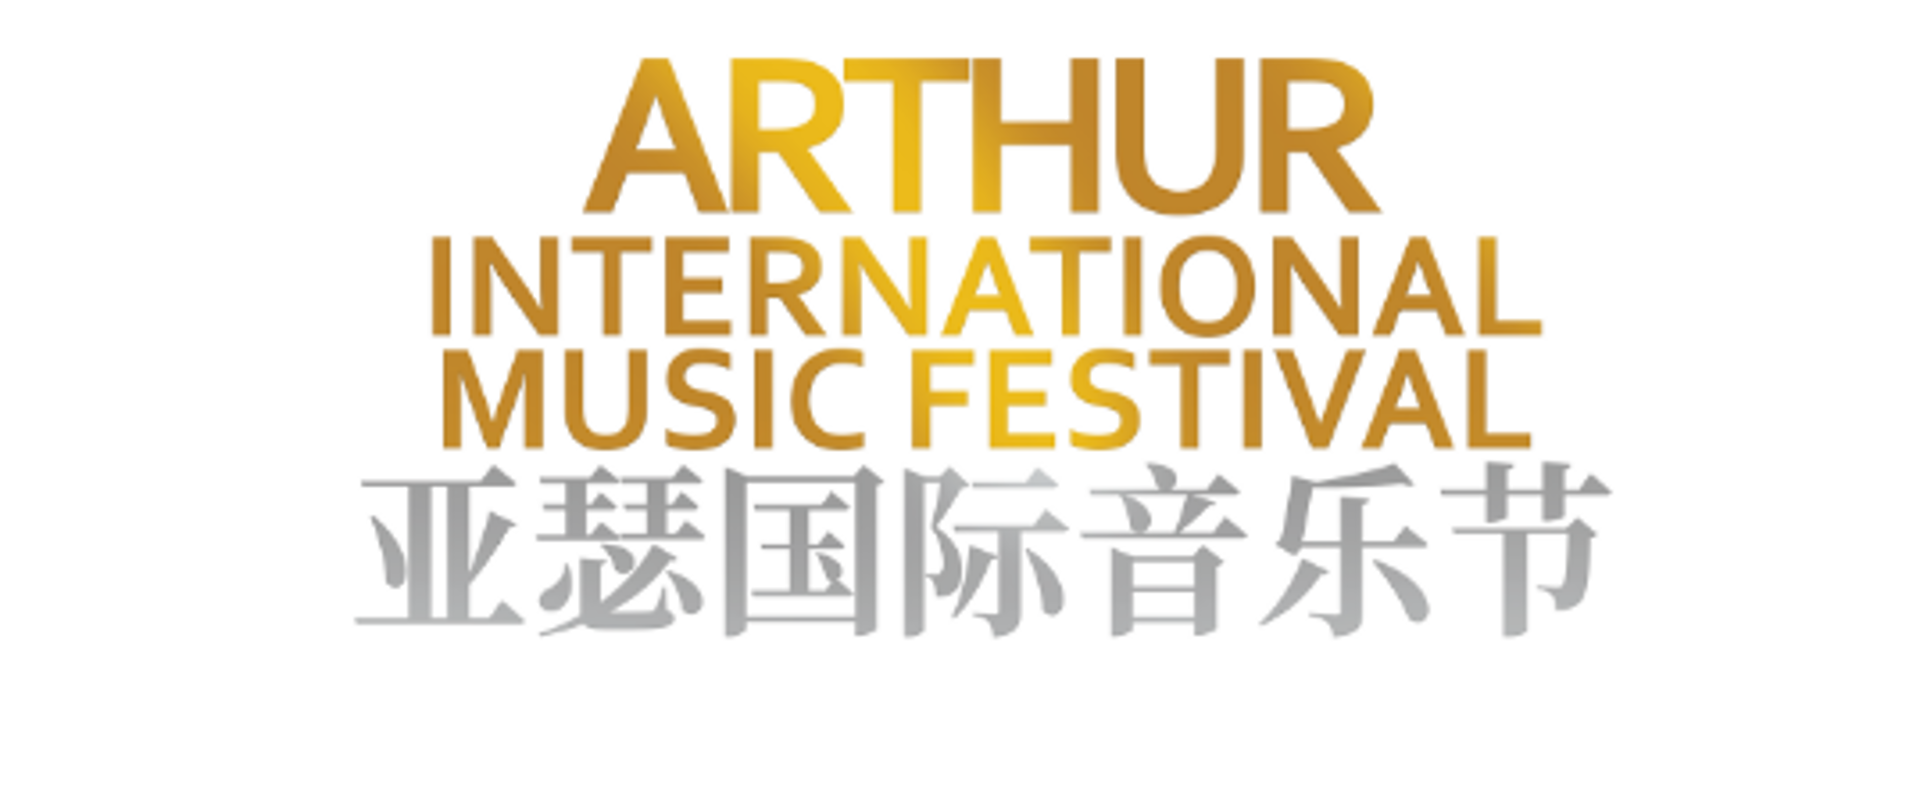 Na plakacie nazwa festiwalu Międzynarodowy Festiwal Muzyczny im. Artura Rubinsteina